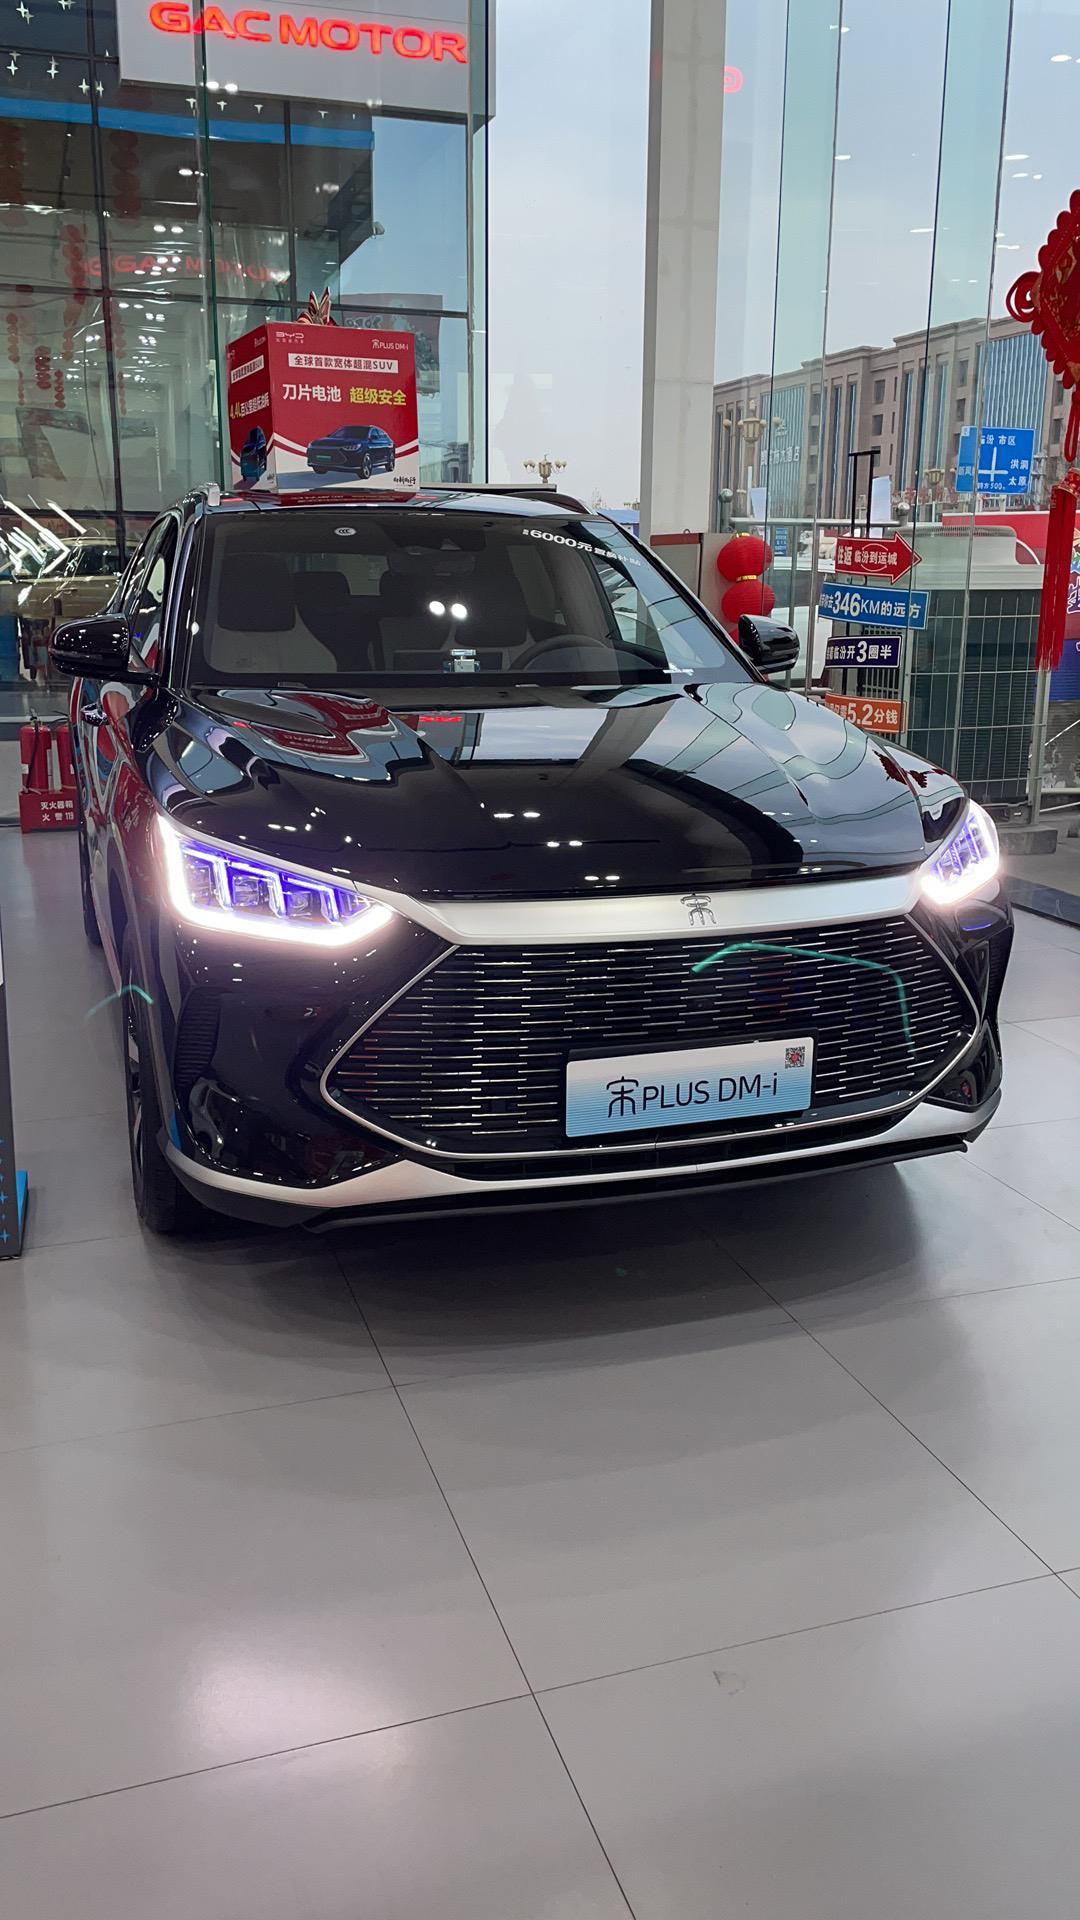 比亚迪宋PLUS DM-i 本人在上海上班，今年考虑买车，价格16.17万左右目前考虑俩款车子    1.比亚迪宋plu